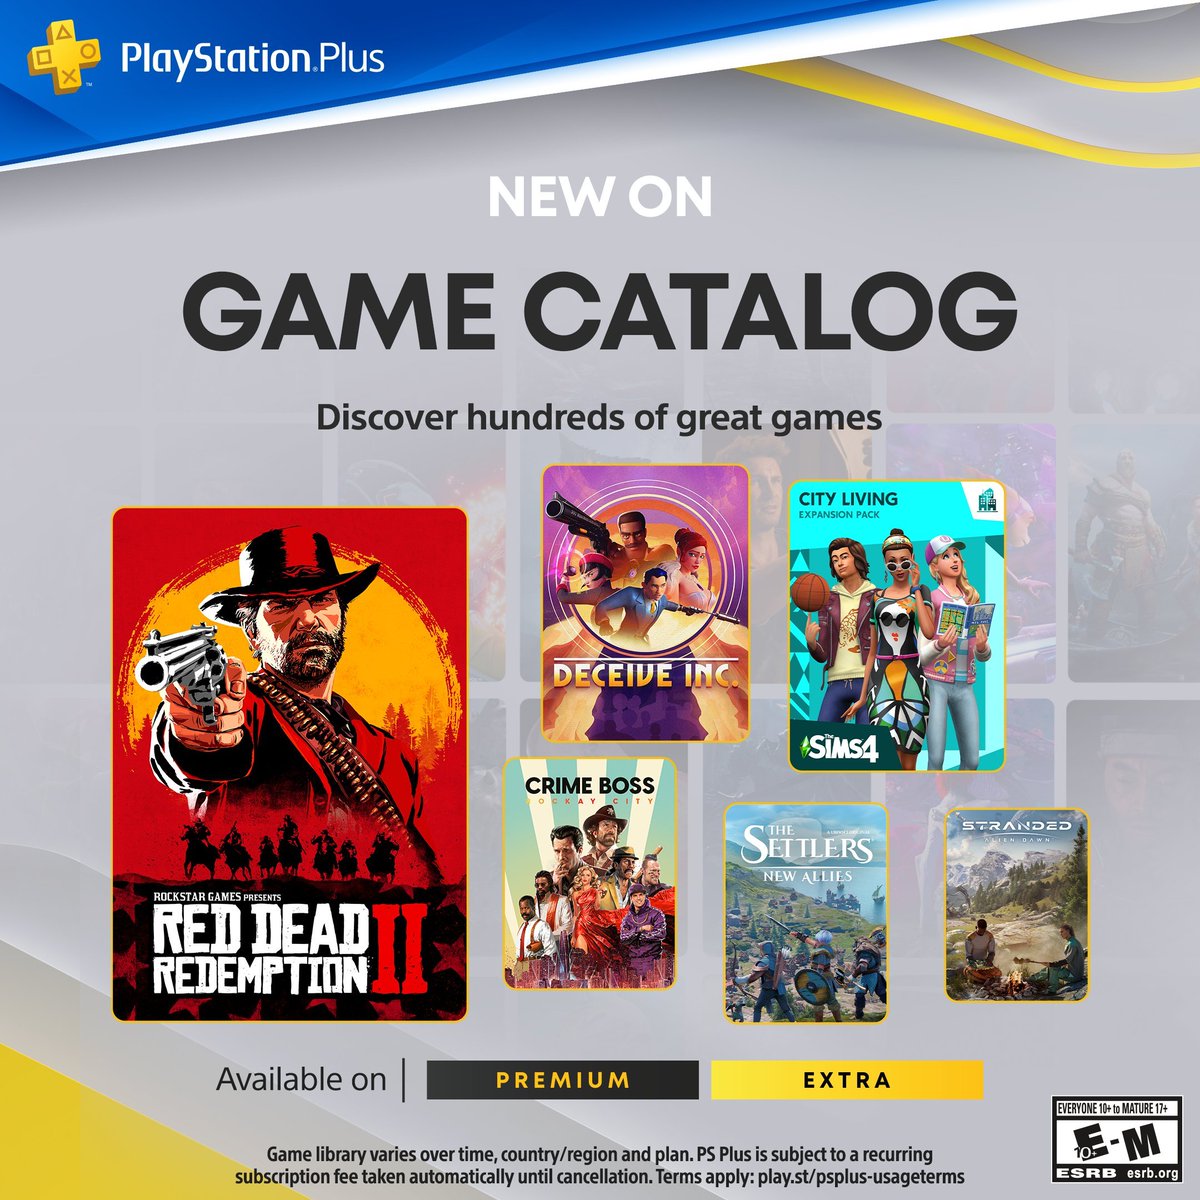 Novos jogos chegando ao catálogo da Playstation plus.